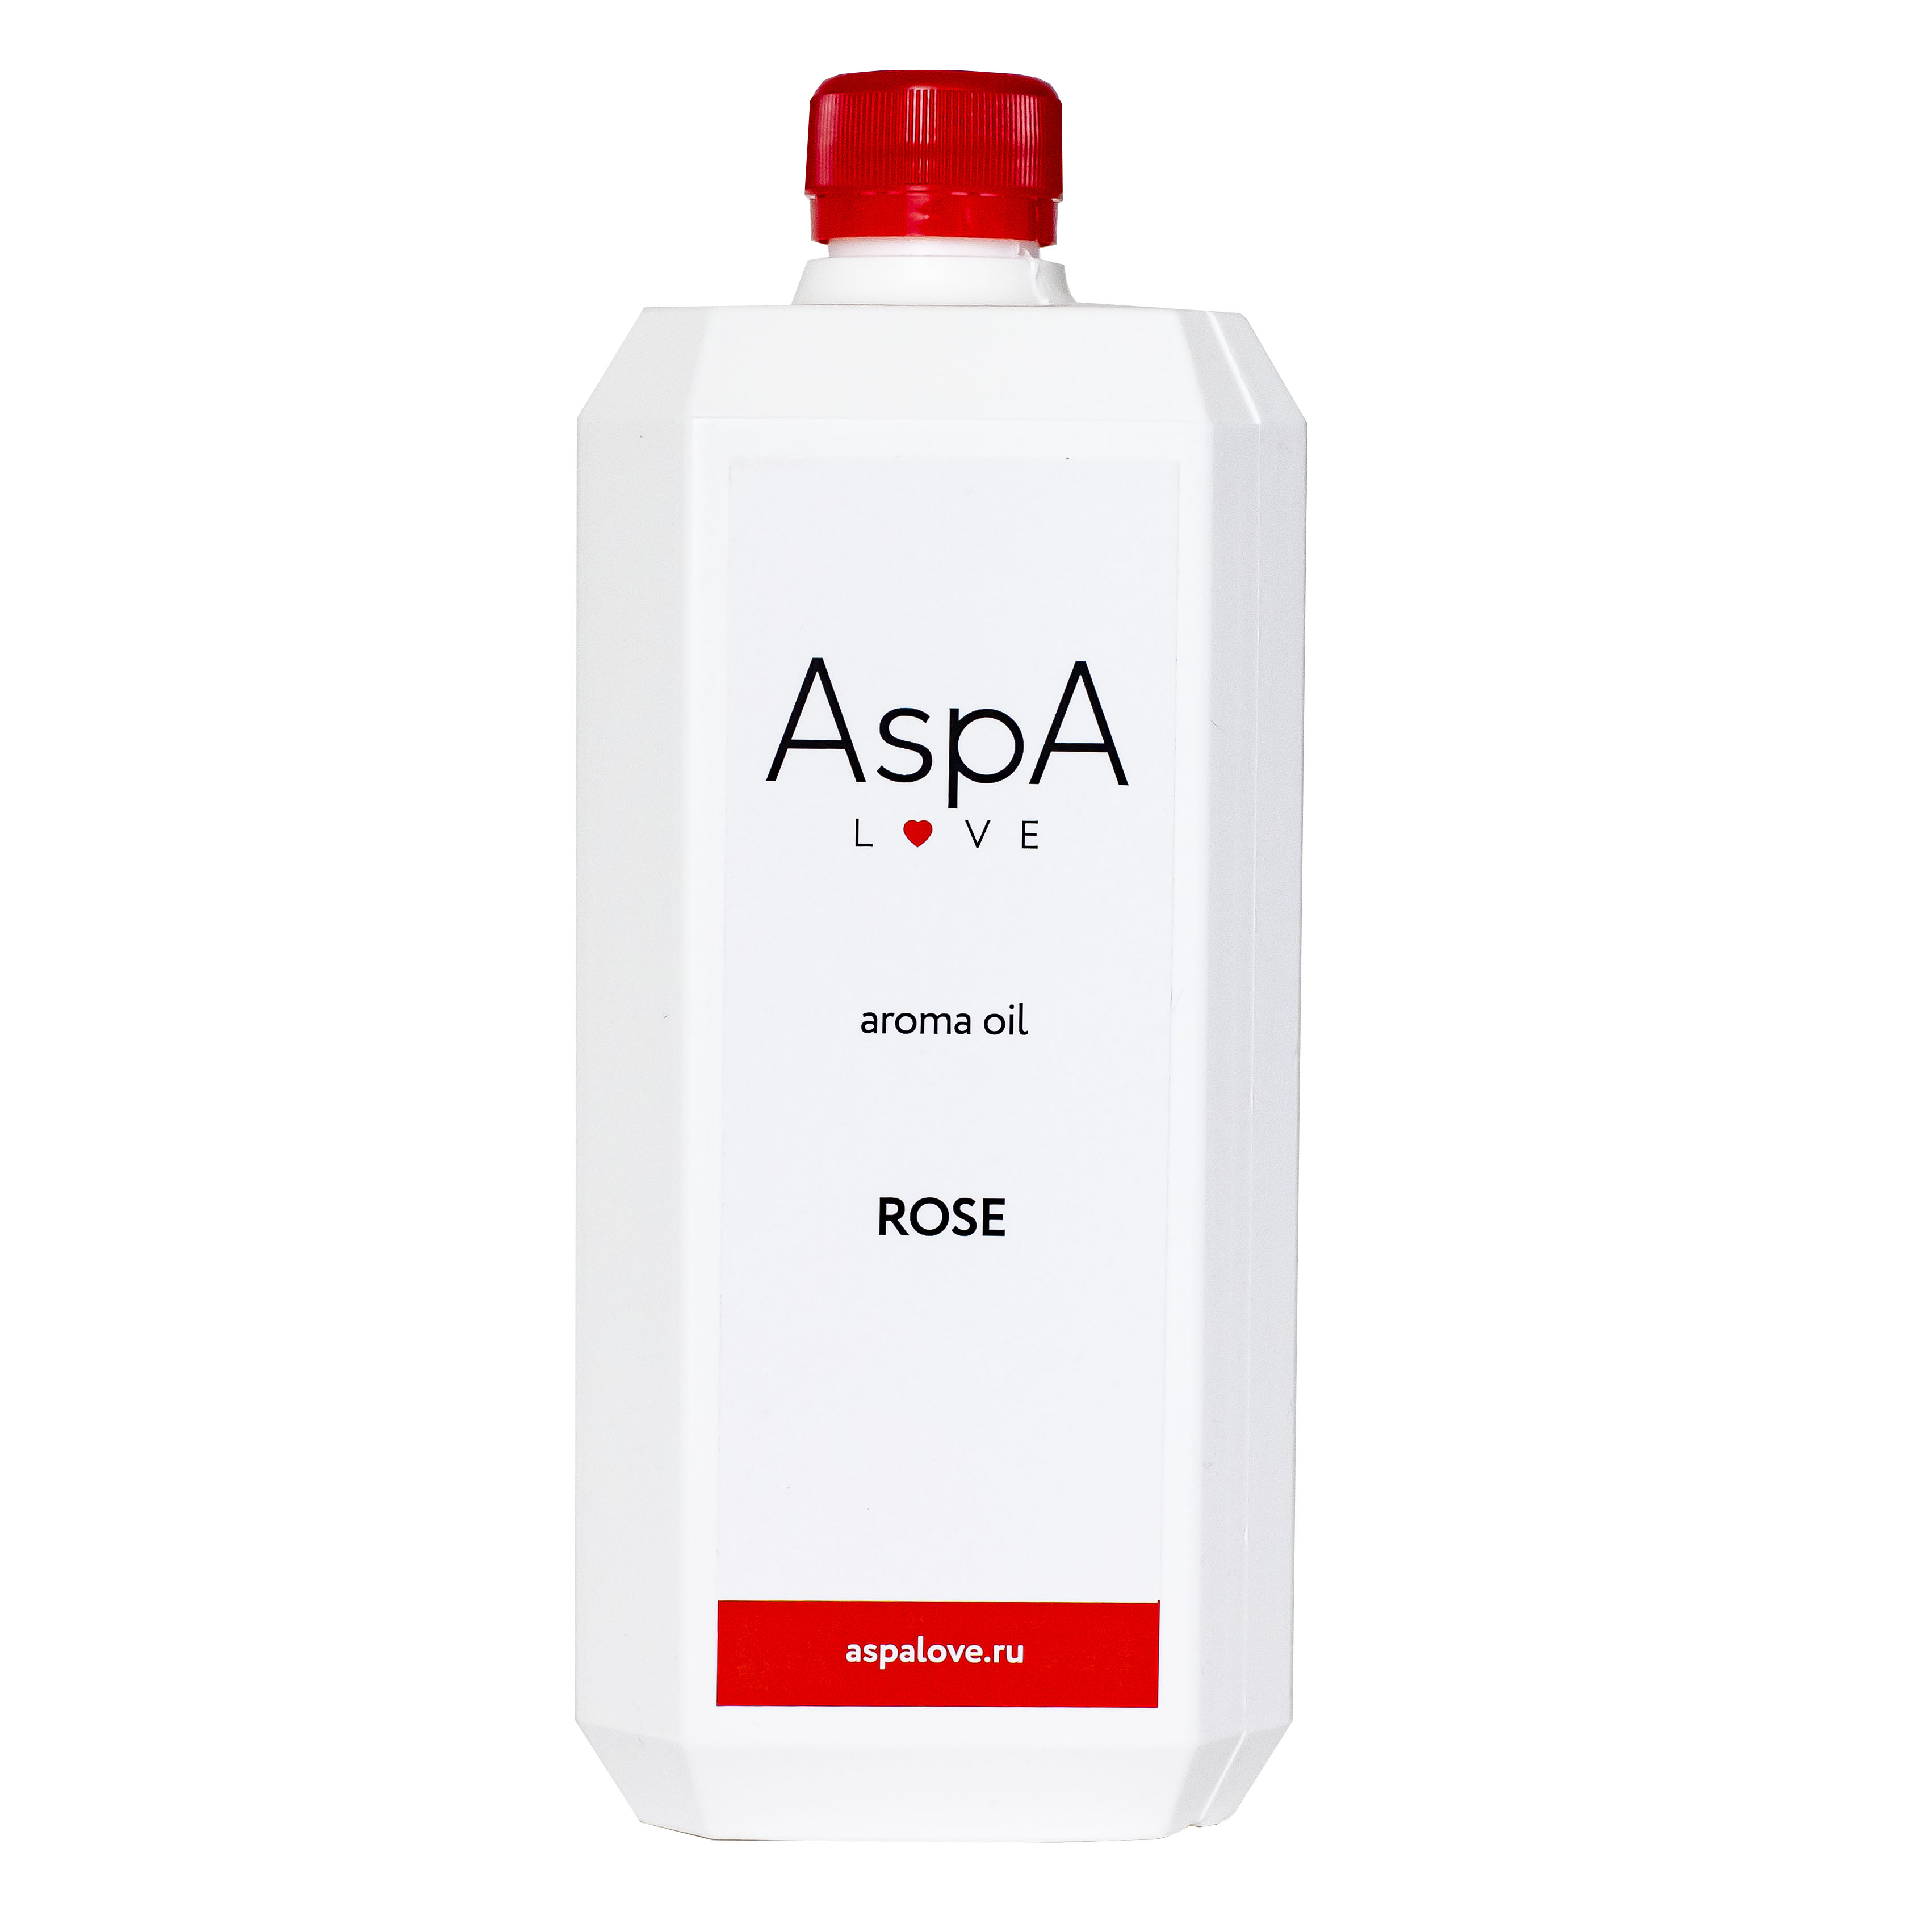 Rose massage. ASPA Love масло массажное. Масло массажное ASPA Love 5000. ASPA Love базовое масло 1 л. Масло массажное персик 1 л availprof.